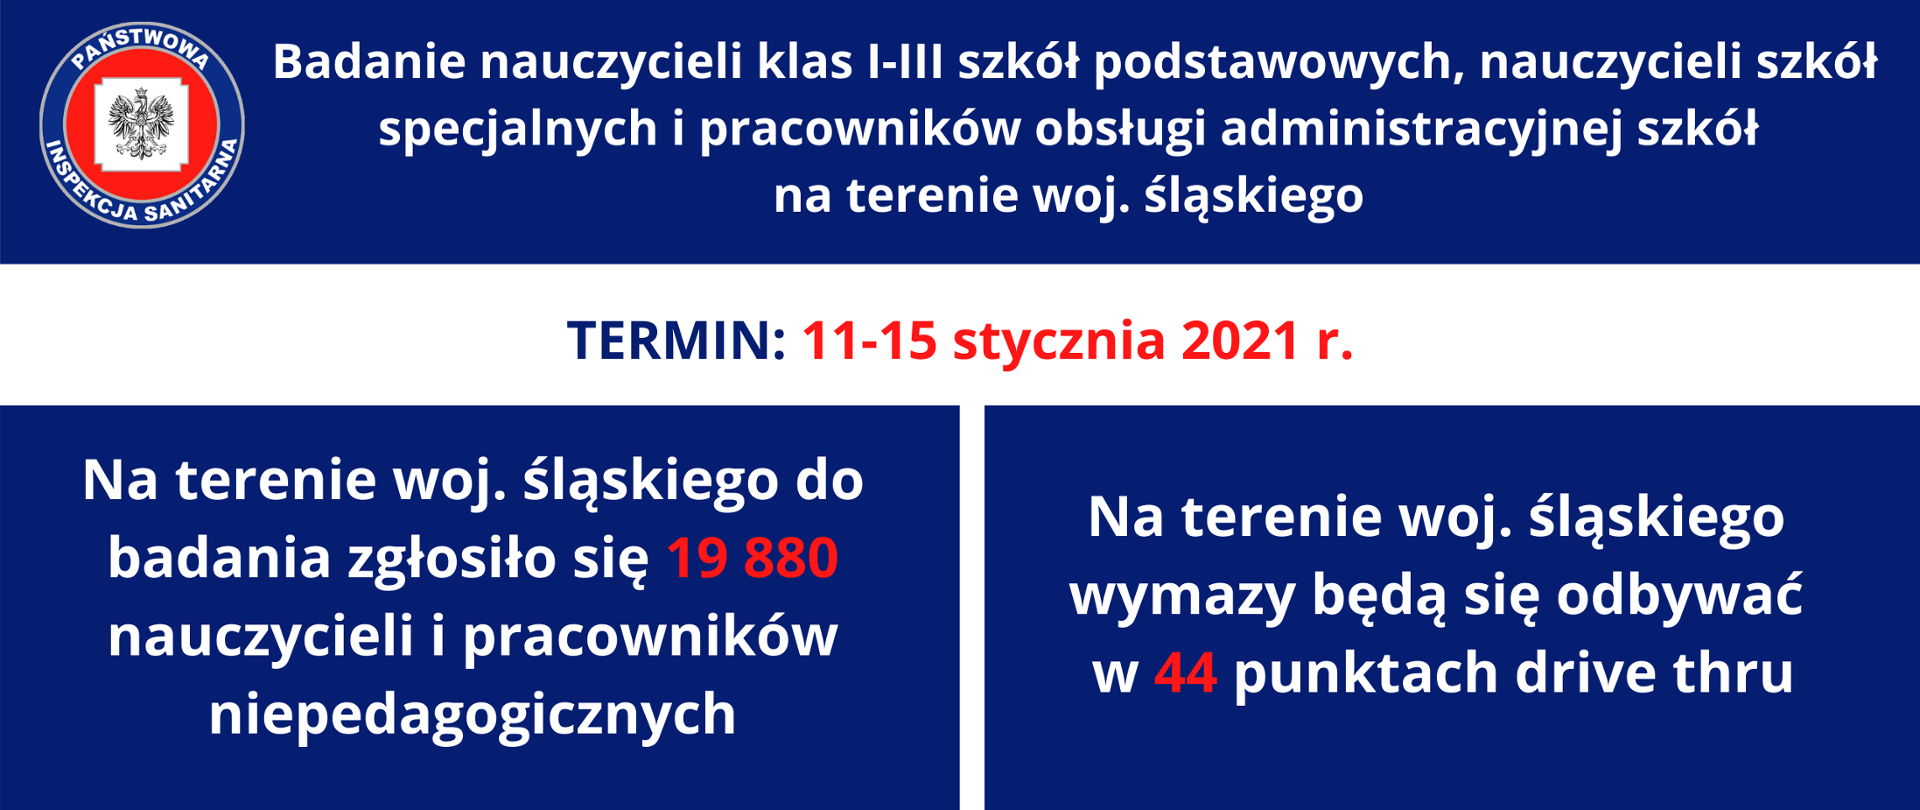 Baner dotyczący przeprowadzenia badań przesiewowych dla nauczycieli klas I-III szkół podstawowych i pracowników obsługi administracyjnej w województwie śląskim